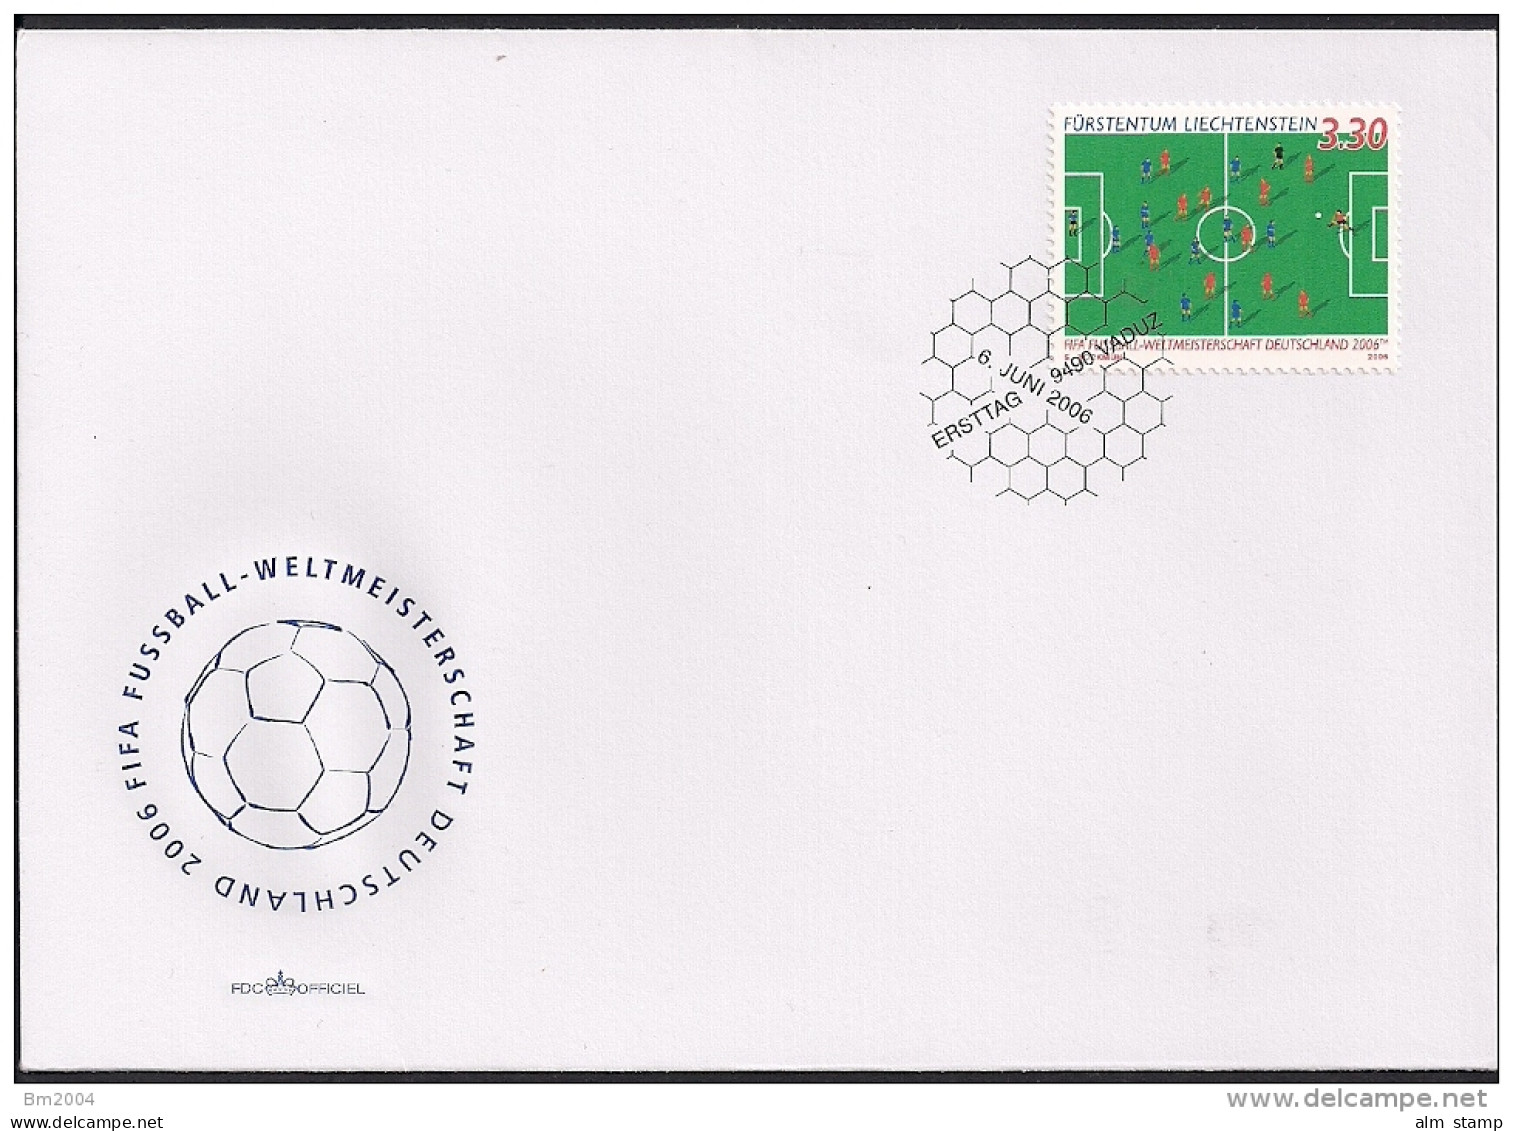 2006 Liechtenstein Mi. 1411 FDC Fußball-Weltmeisterschaft, Deutschland - 2006 – Germany